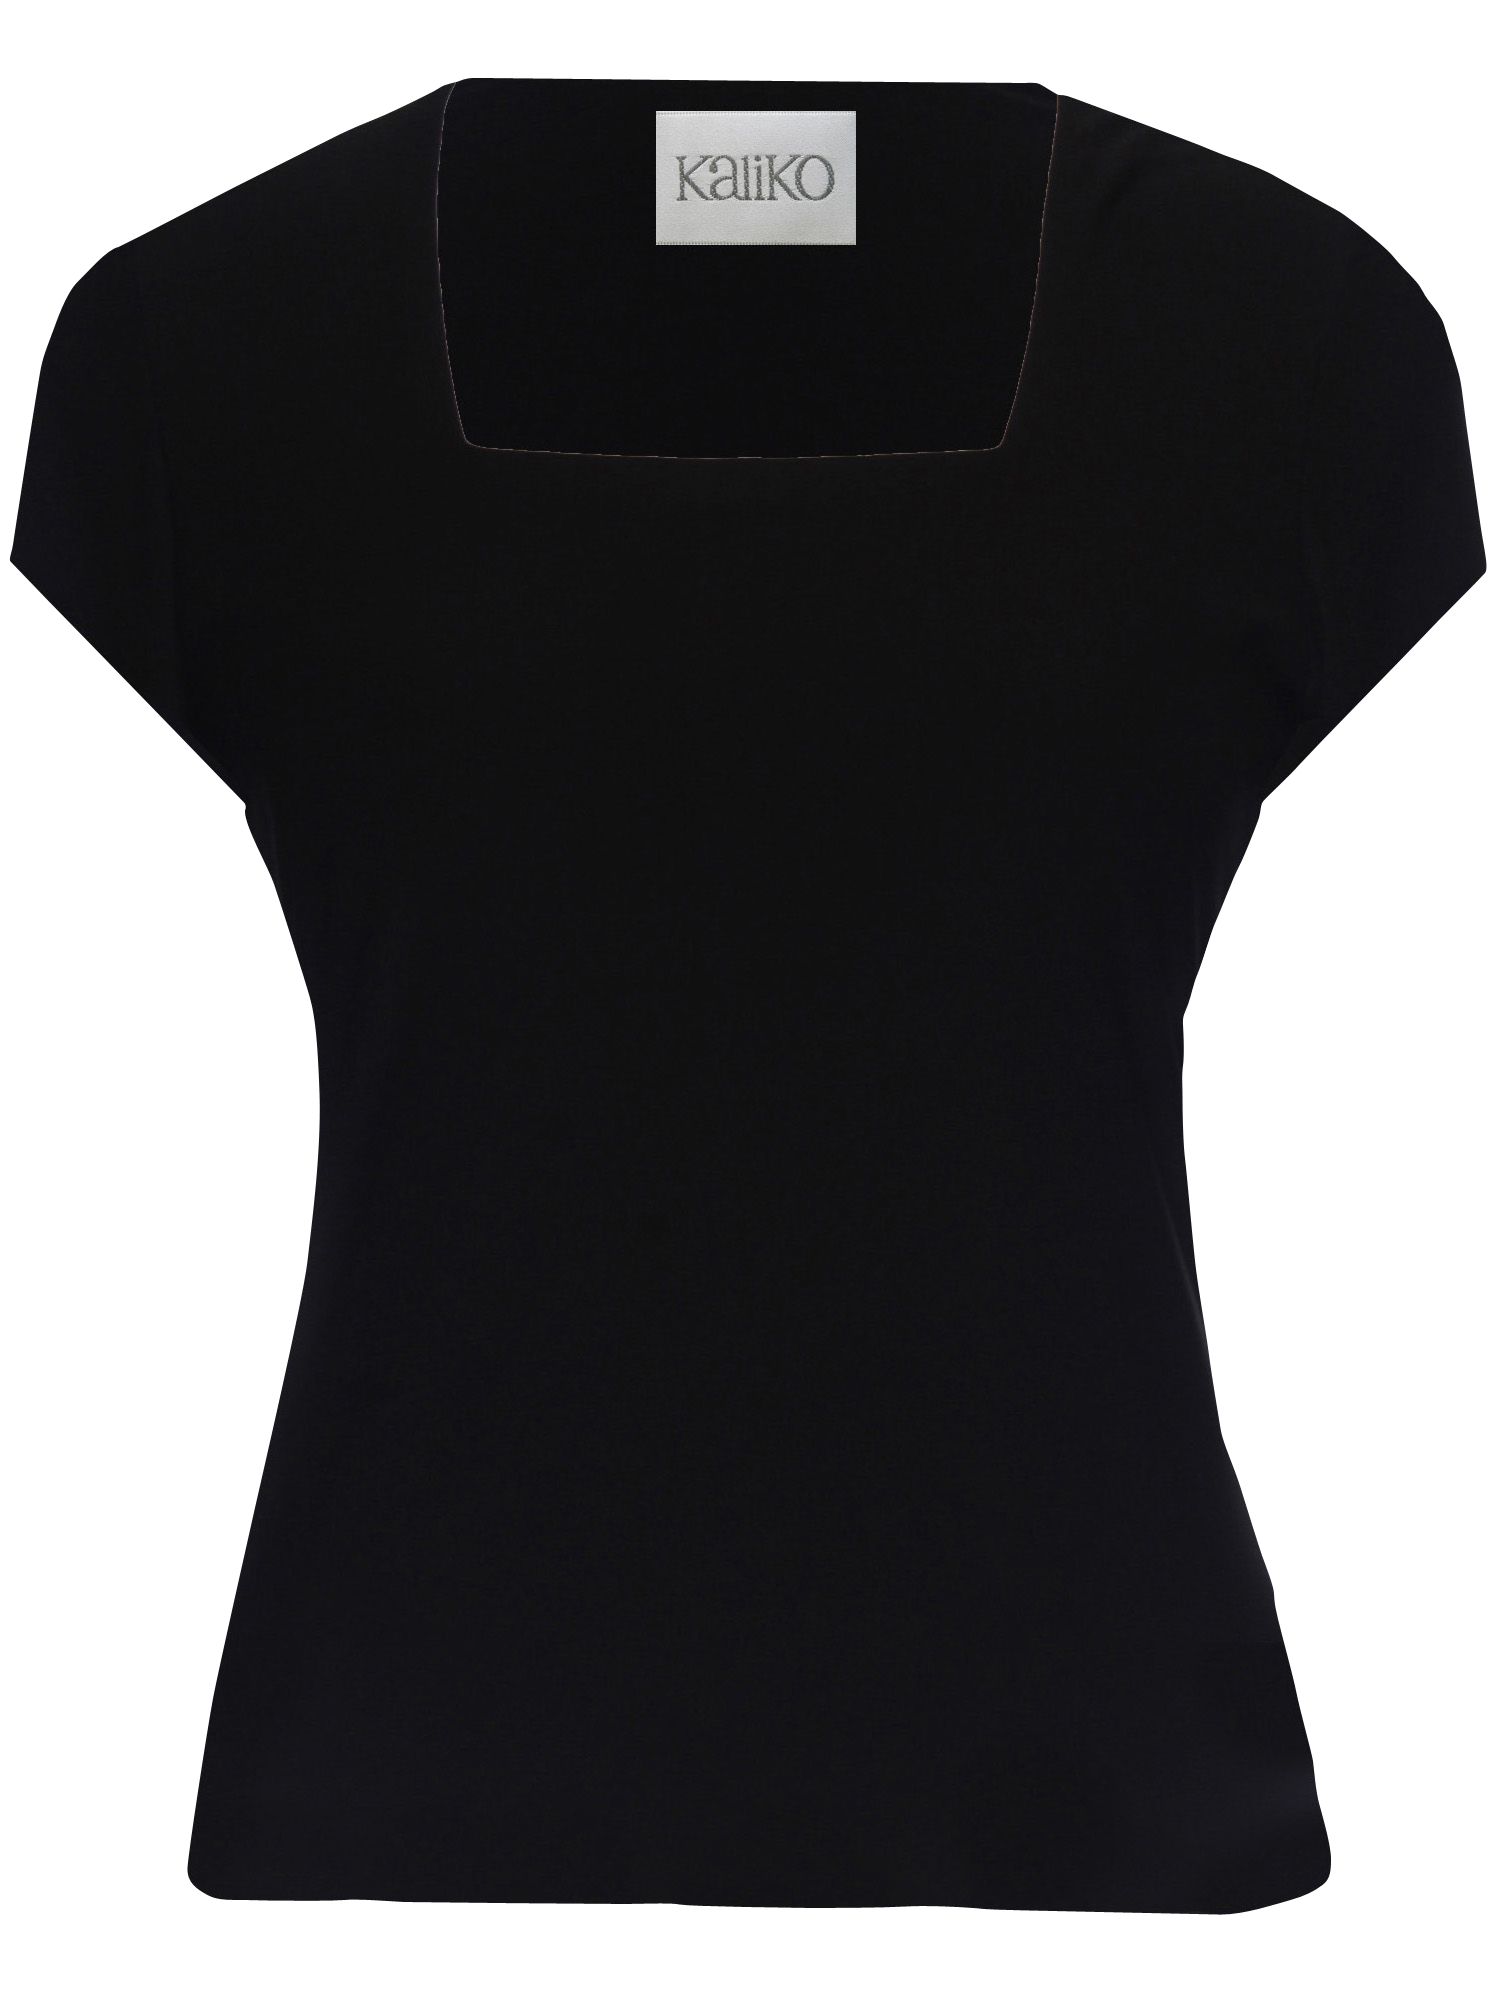 Kaliko Short Sleeve Square Neck T-Shirt, Black